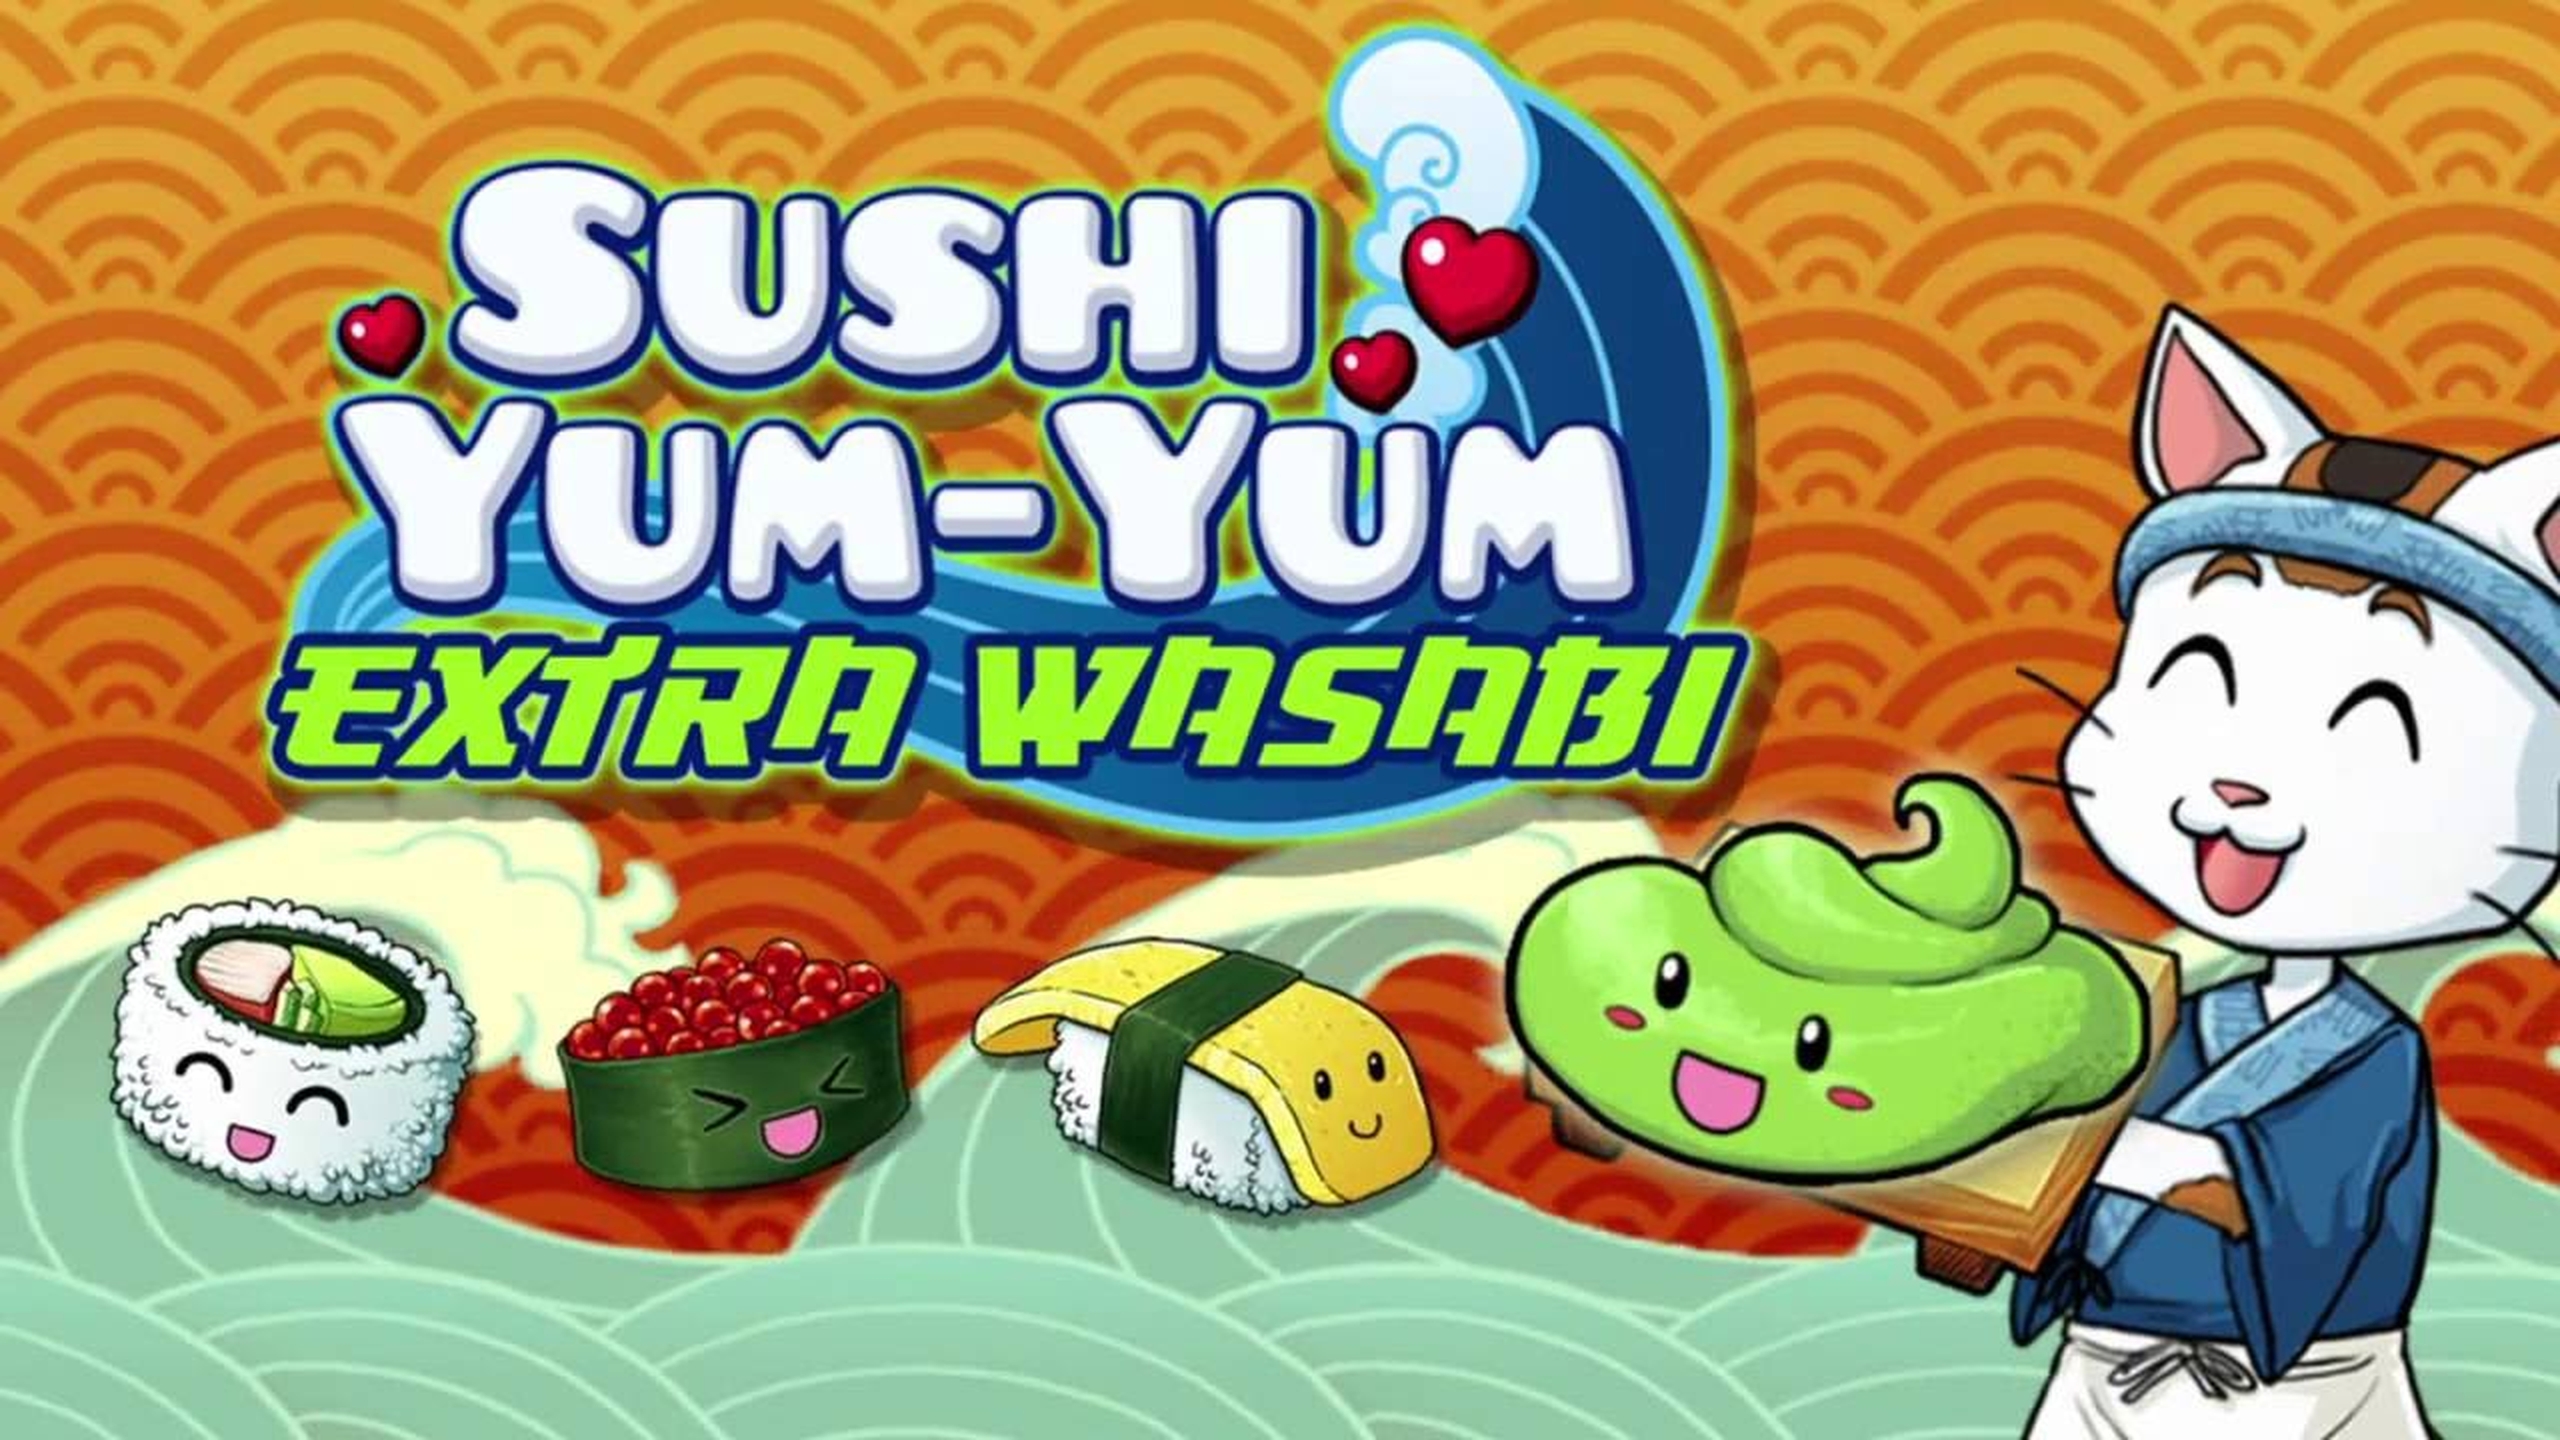 Sushi Yum-Yum Extra Wasabi